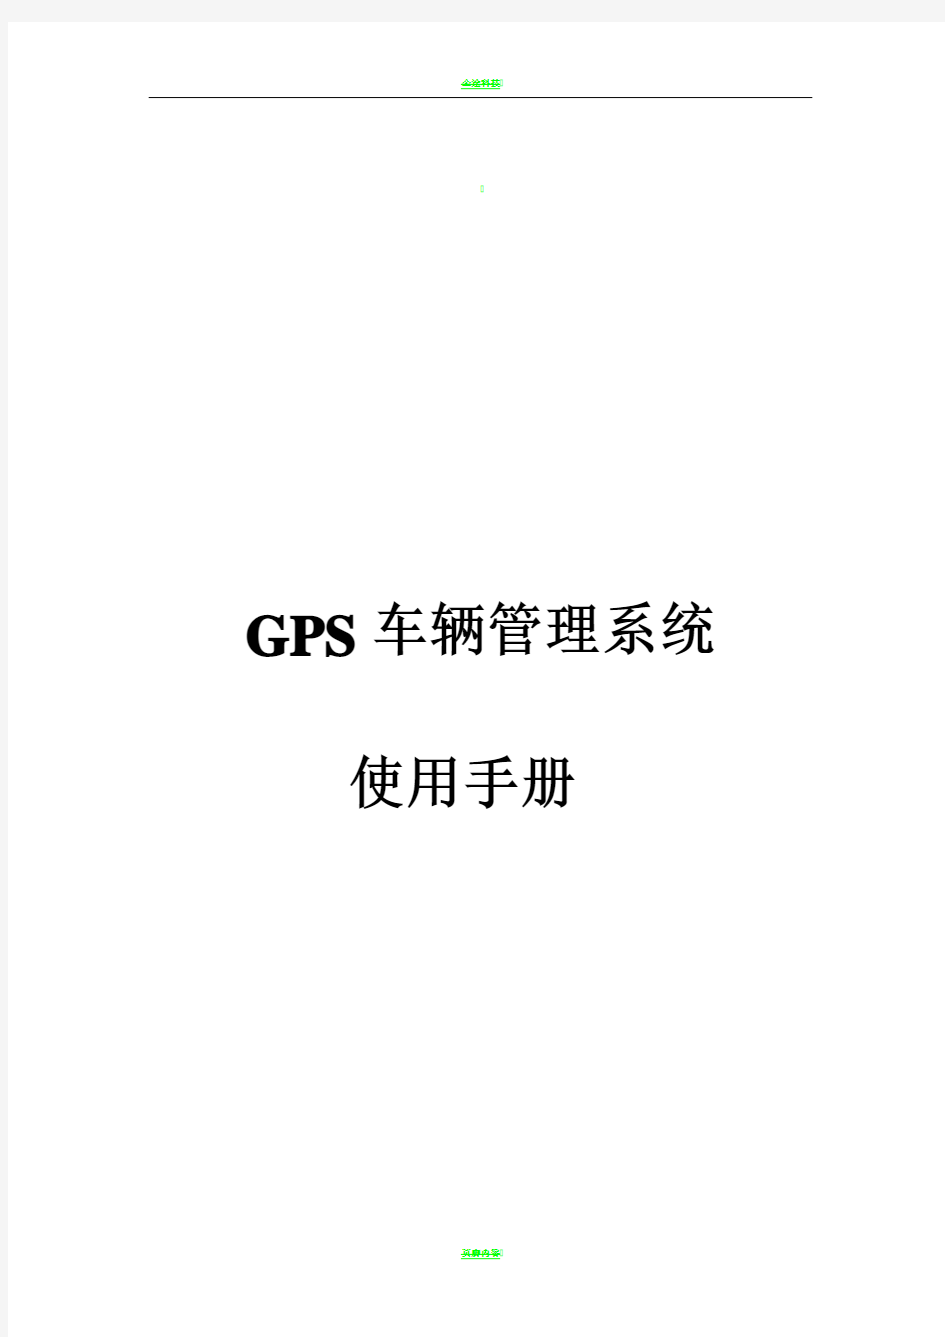 GPS车辆管理系统使用手册